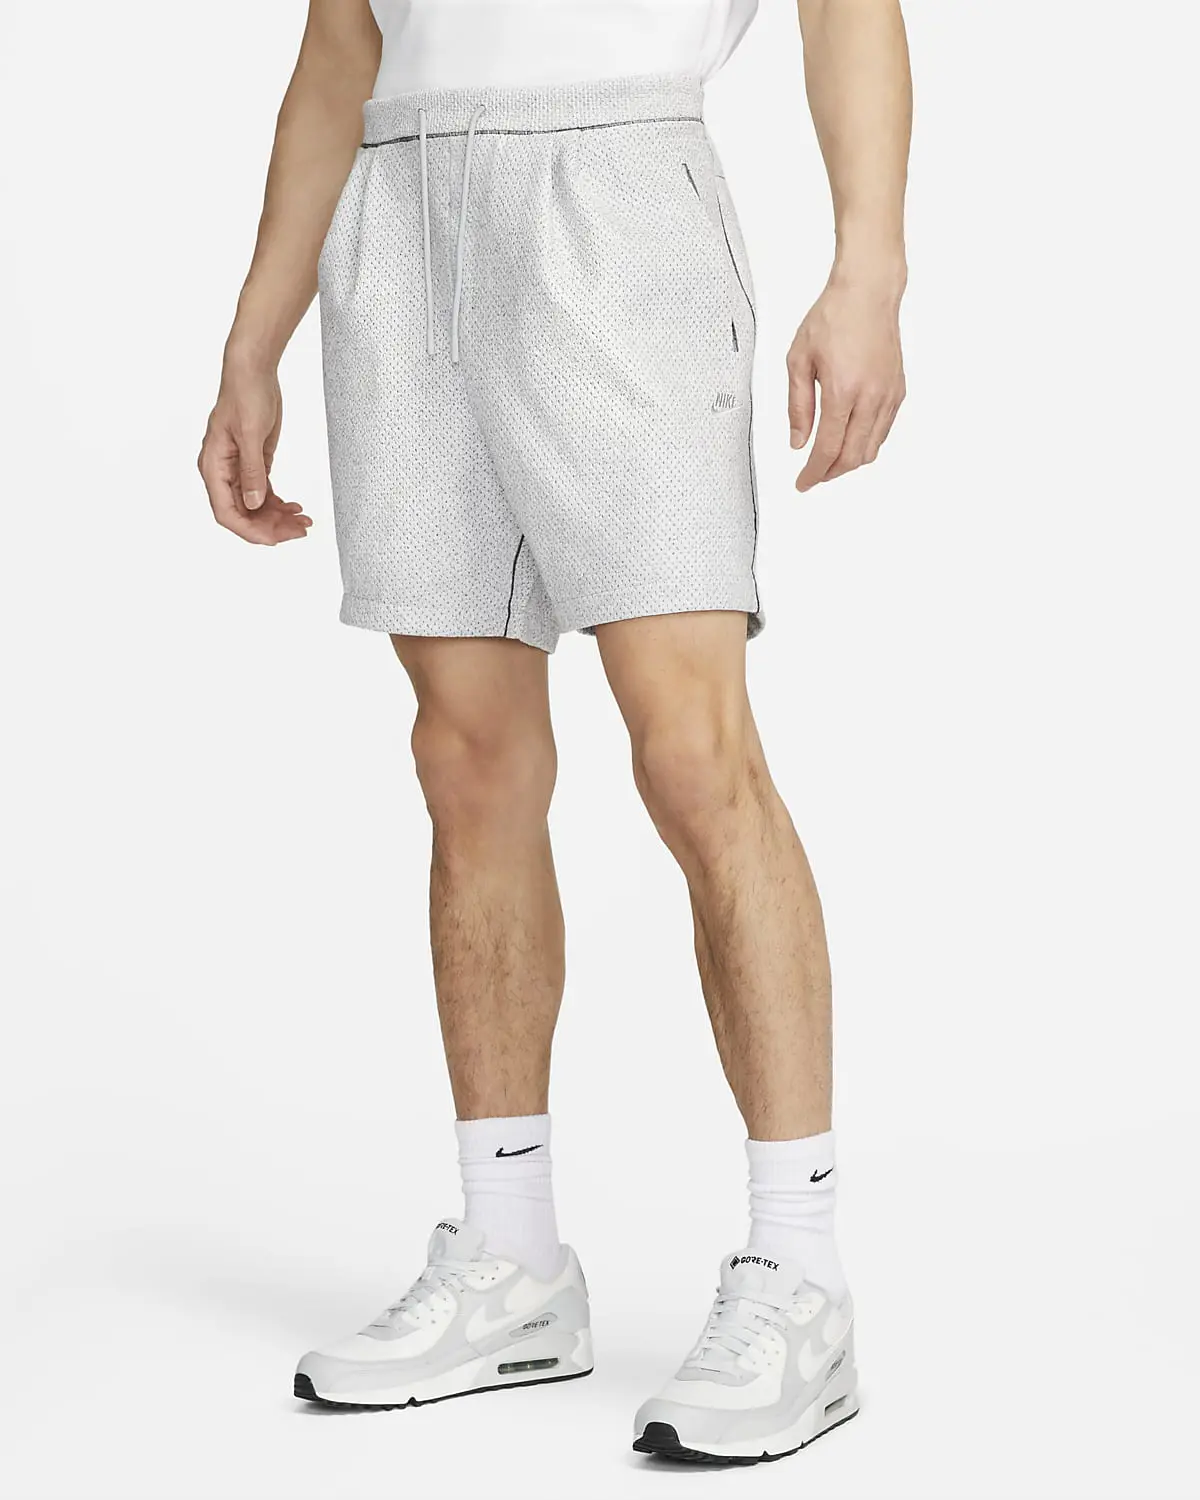 Nike Forward Shorts. 1